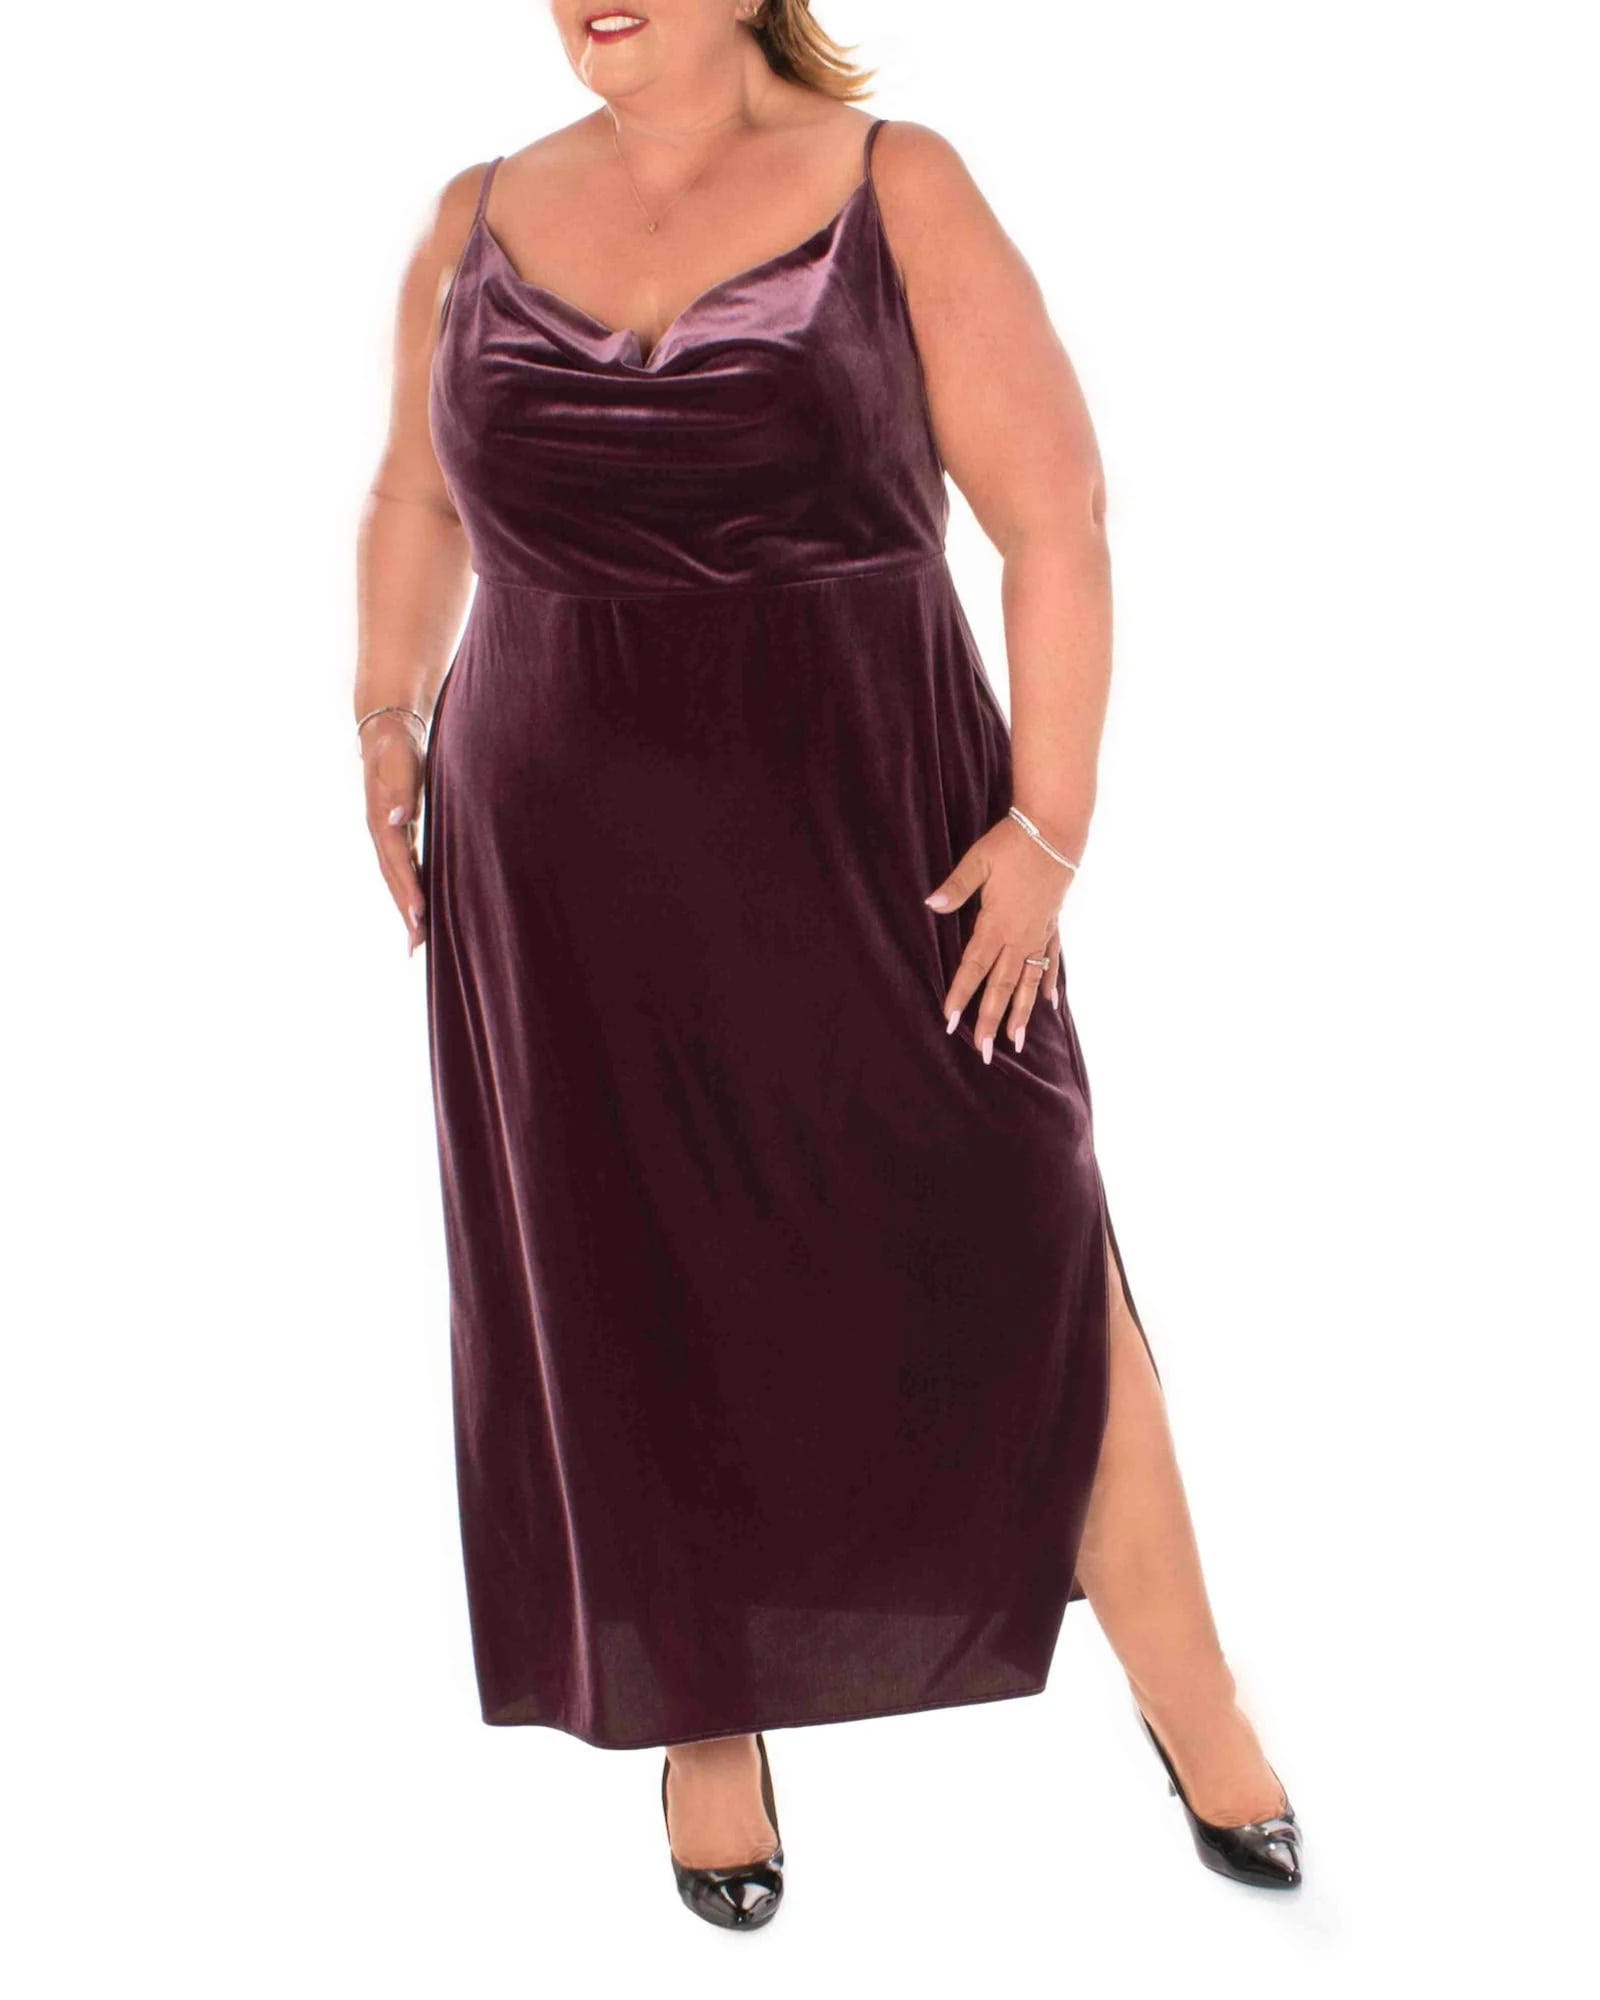 Stylish Velvet Long Dress in Wine | Image